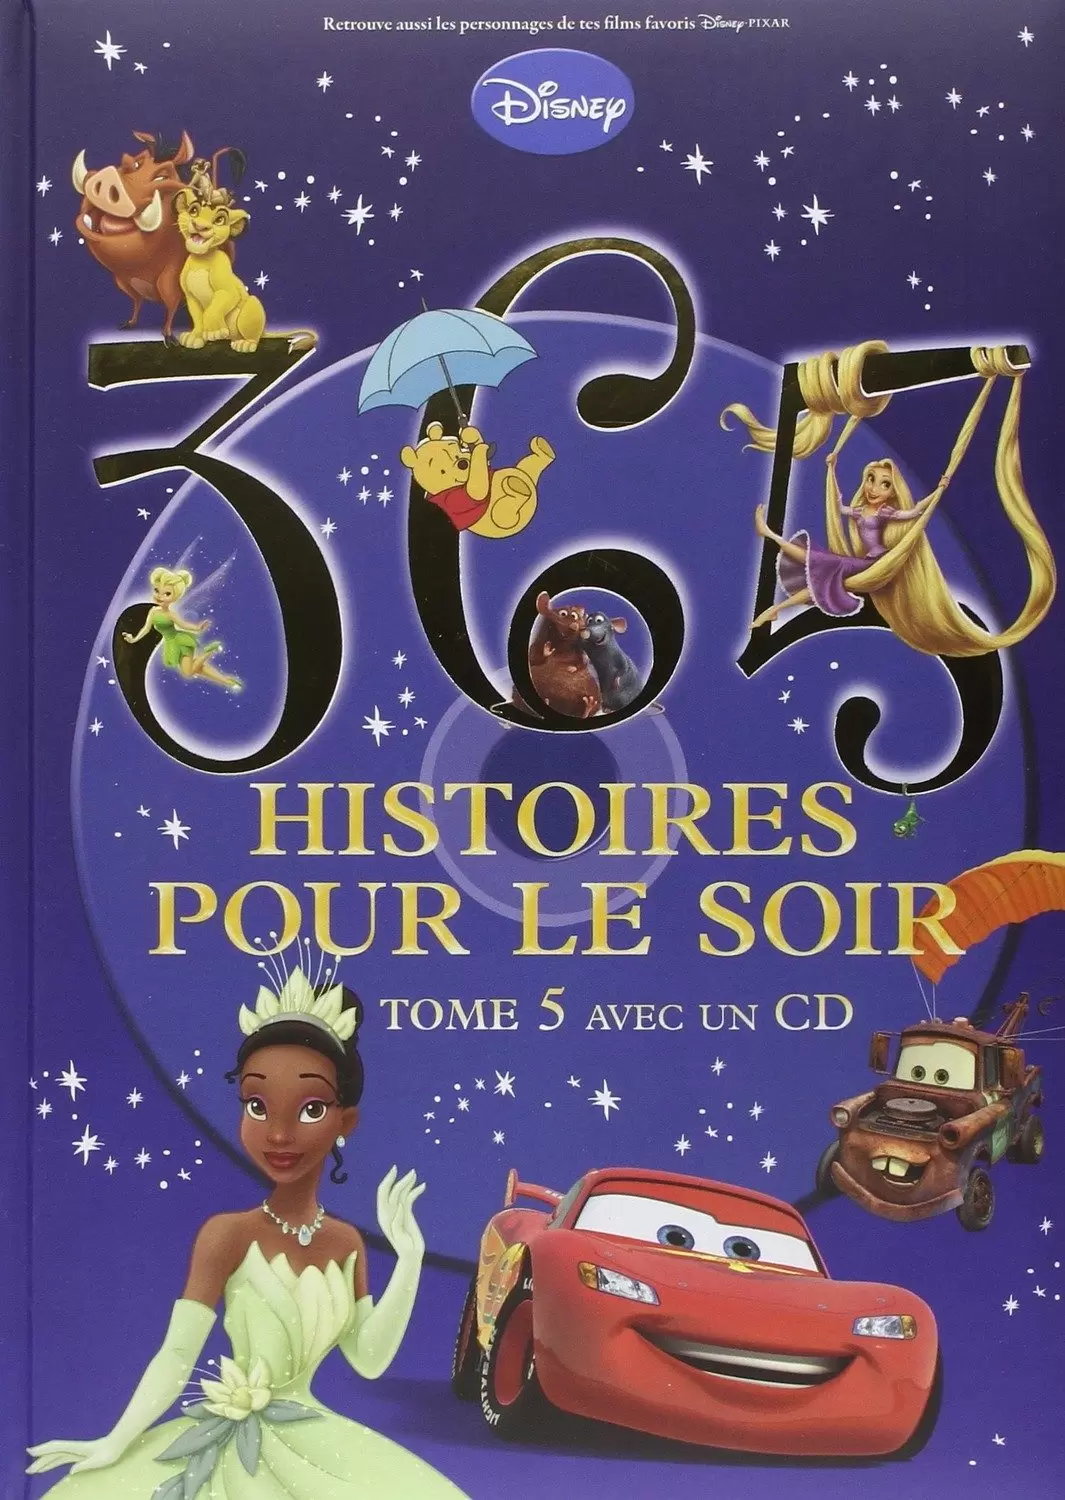 Disney - Histoires pour le soir et pour la semaine - 365 Histoires pour le soir - Tome 5 avec 1 CD